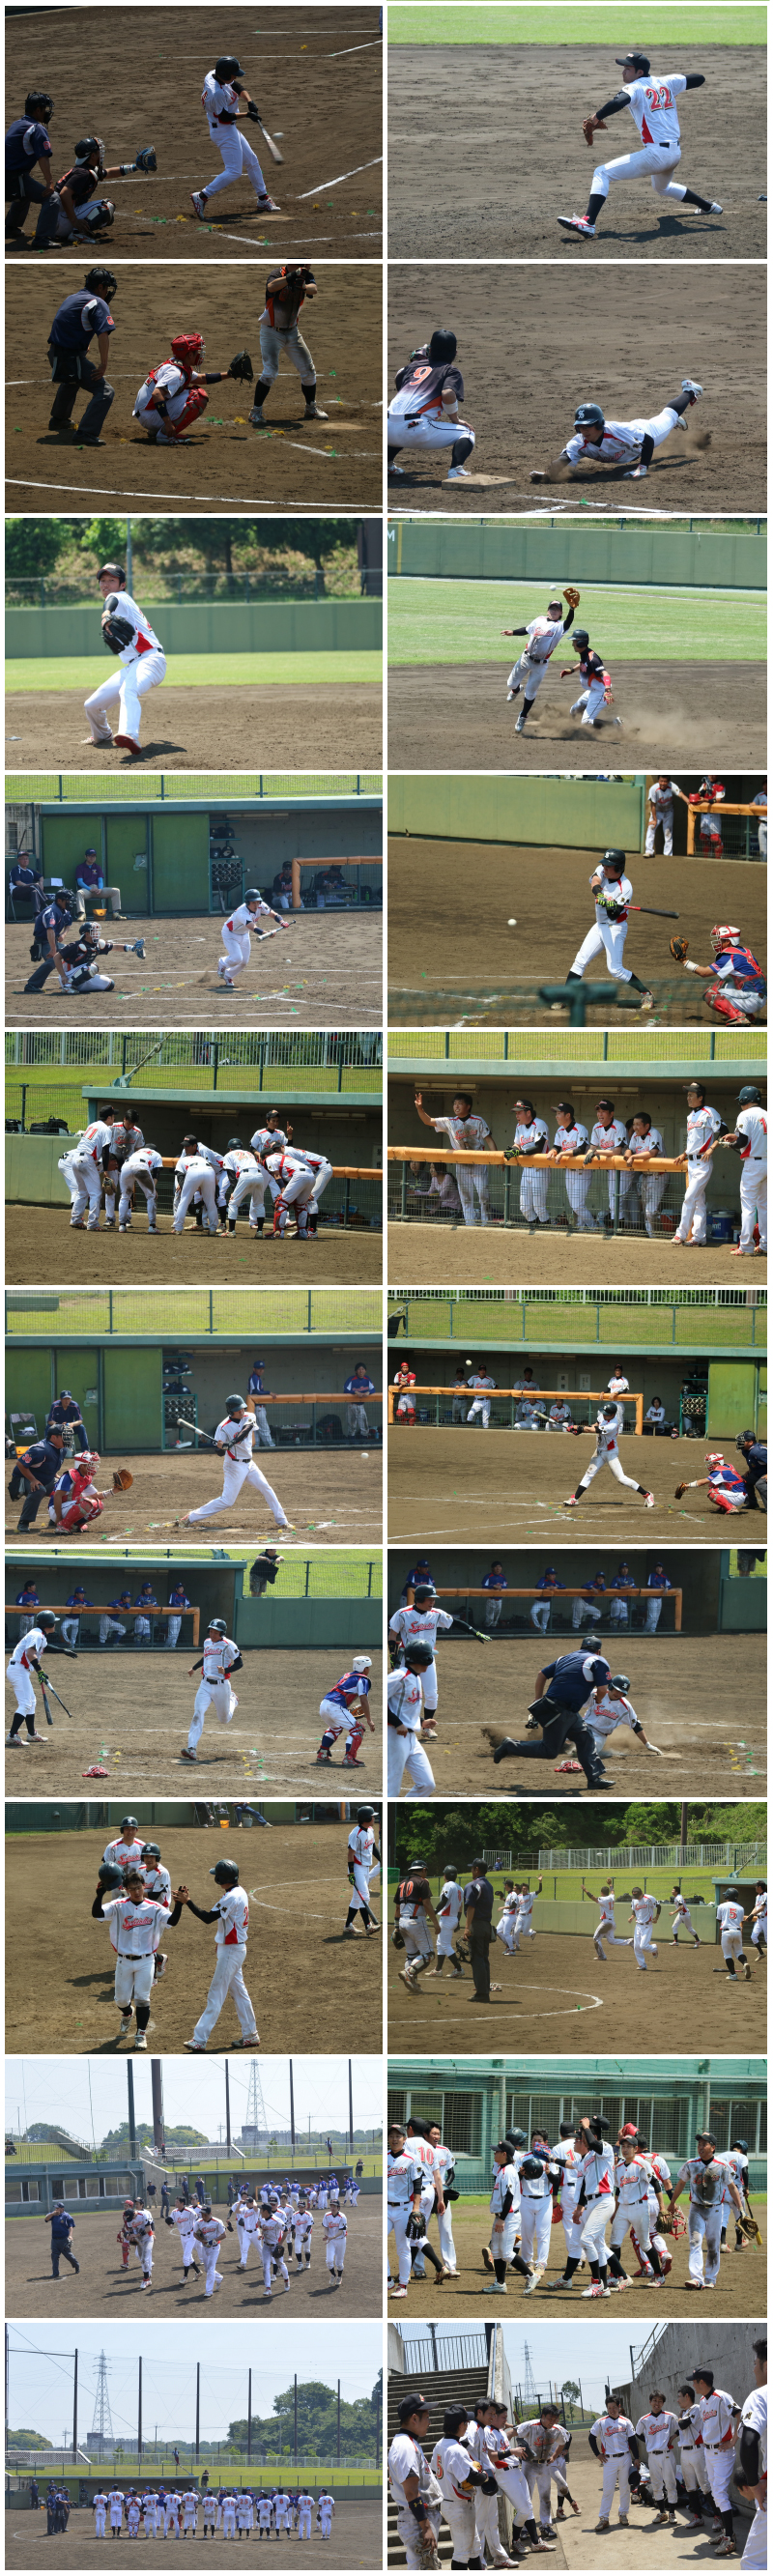 sekisho_baseball